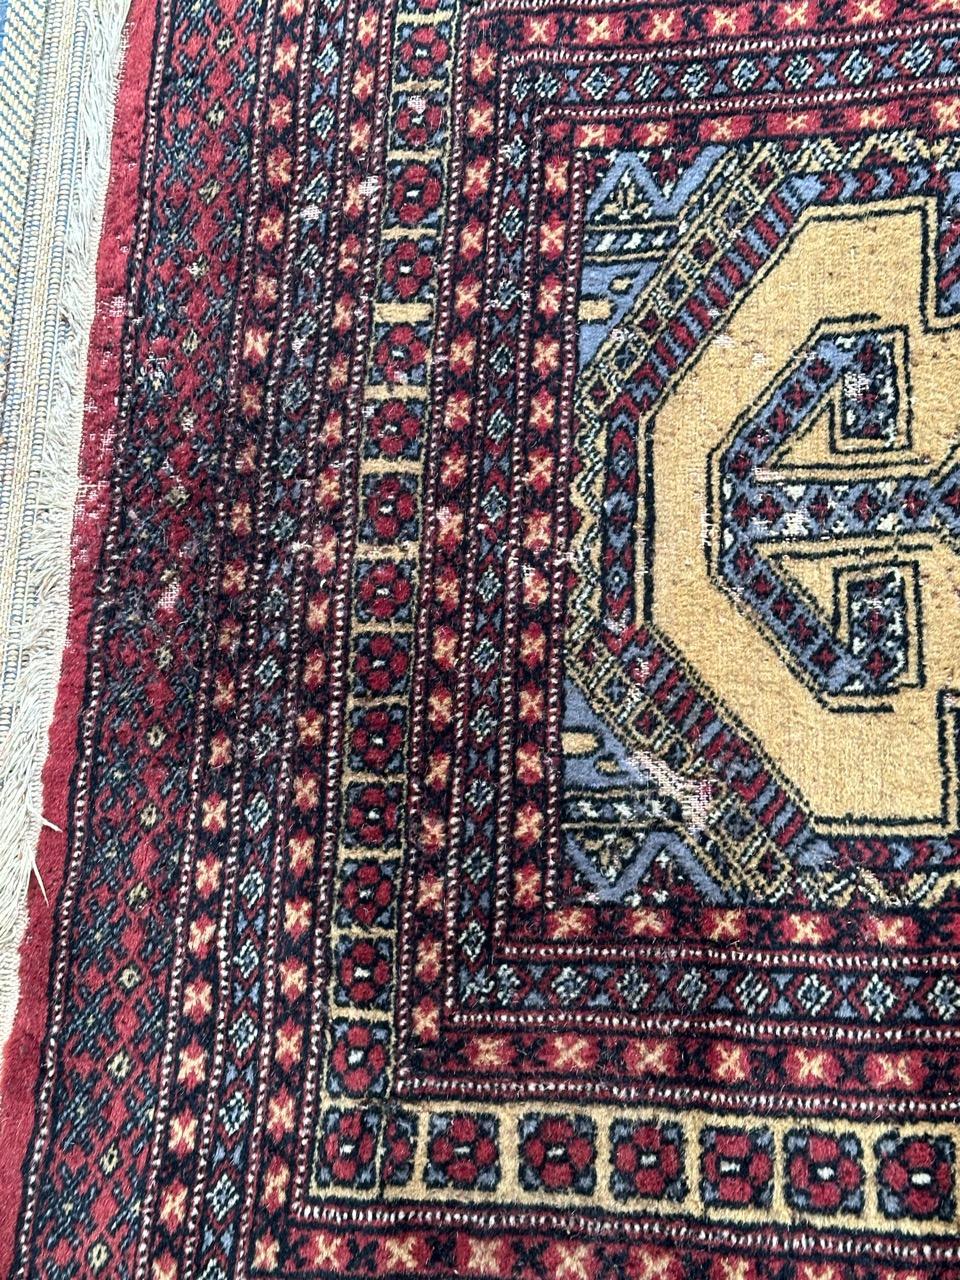 Vintage Pakistan Teppich mit geometrischen turkmenischen Muster und blau, gelb, schwarz und rot auf Farben, trägt durch den Einsatz, ganz handgeknüpft mit Wolle auf Baumwollbasis 

✨✨✨
